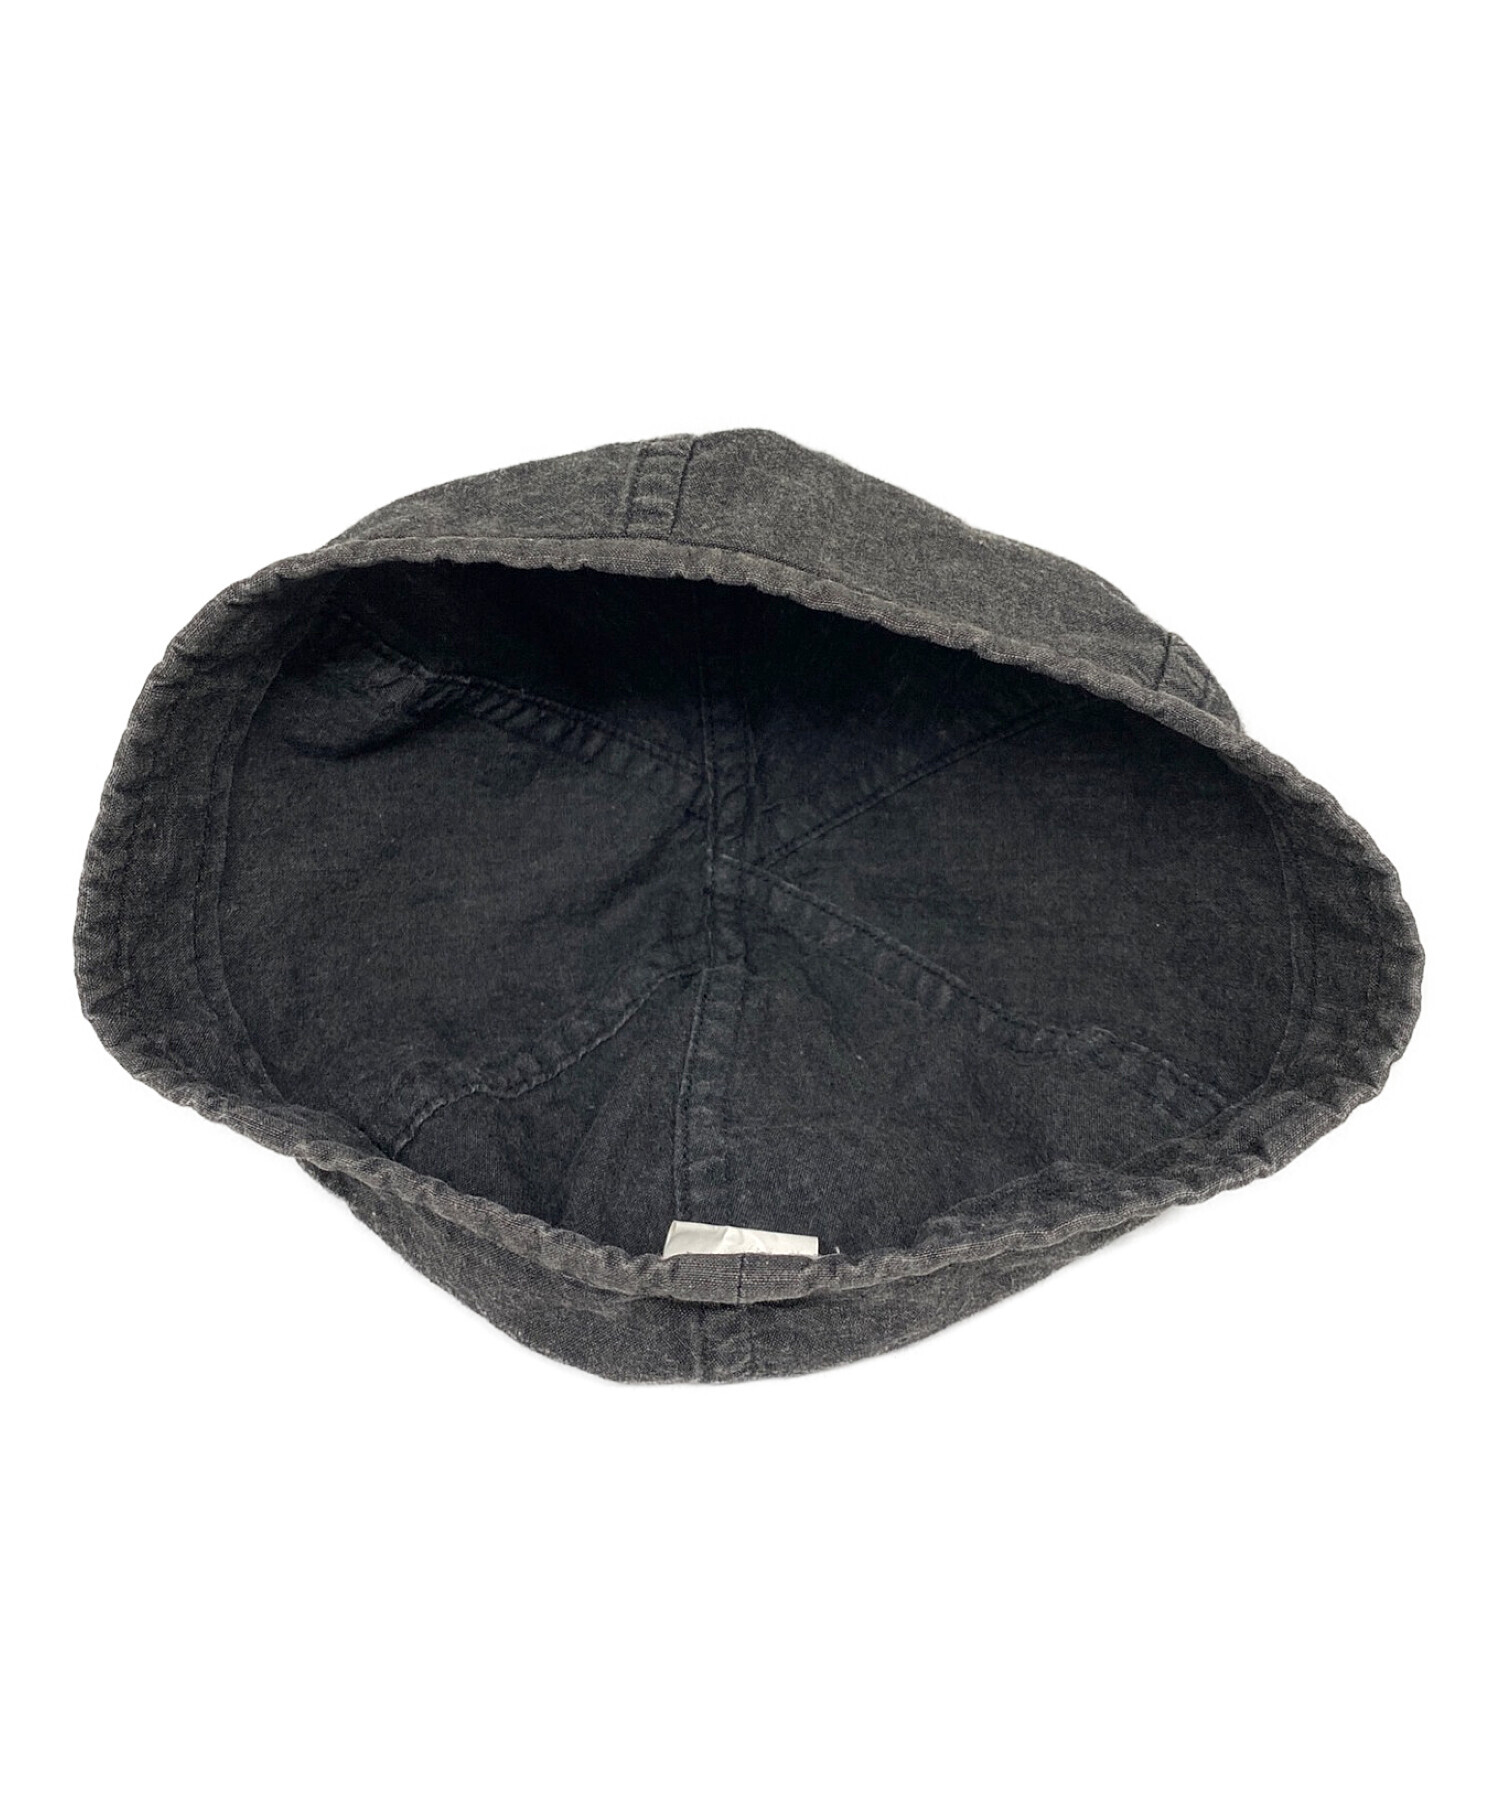 2個セット】ポータークラシック H/Wベレー帽 黒、グレー購入を考えて 